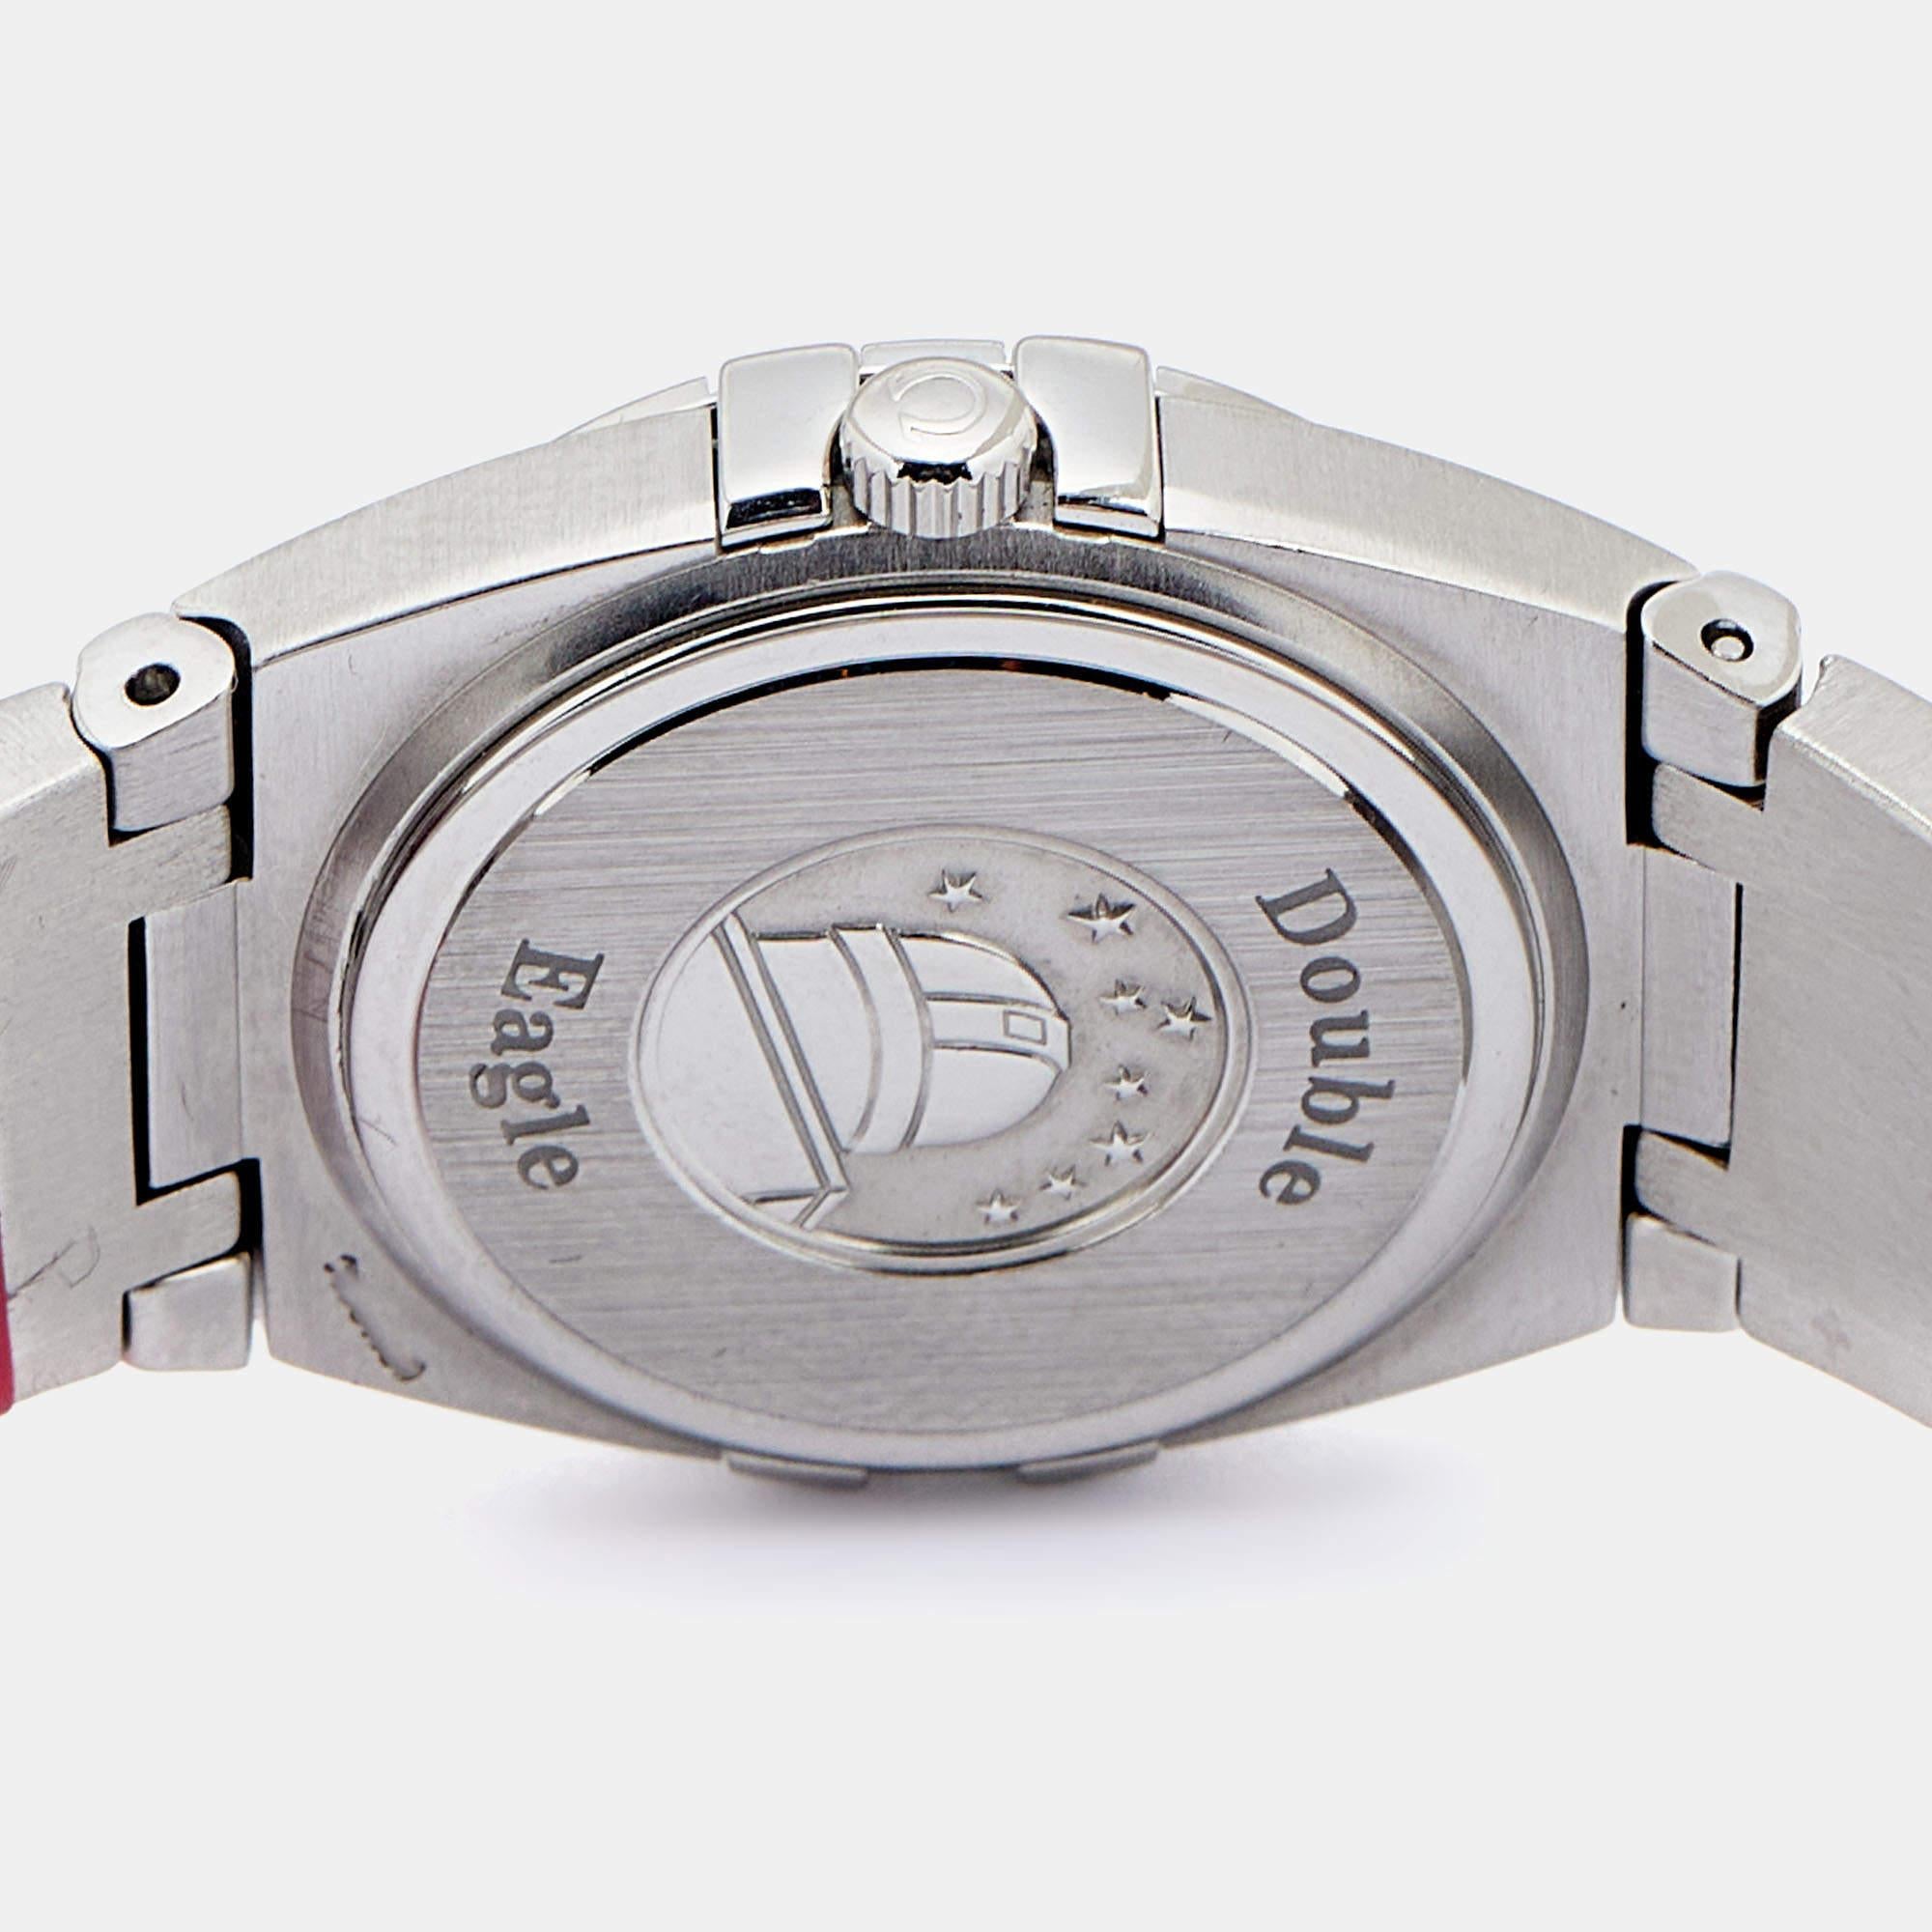 Cette montre-bracelet Omega Constellation, très glamour, vous permettra de briller tout au long de votre vie. La montre présente un cadran en nacre avec des index en diamant, un boîtier rond en acier inoxydable et une lunette en diamant. Il est fixé